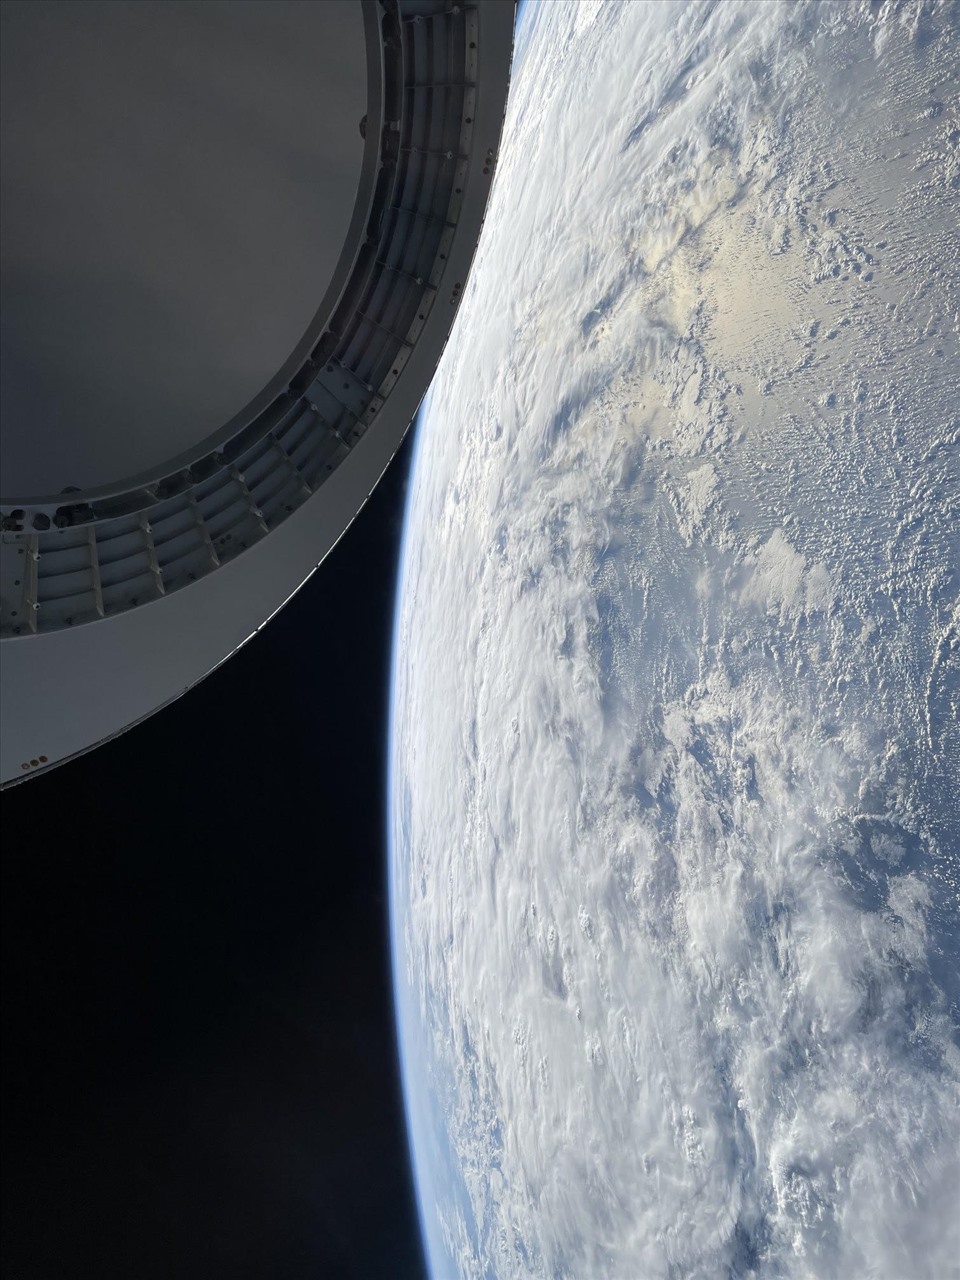 Thưởng thức hình ảnh phi hành gia tuyệt đẹp của SpaceX Inspiration4 và cảm nhận chuyến hành trình đầy cảm xúc này. Cùng tìm hiểu về những con người dũng cảm đã vượt qua mọi thử thách và đến được với ngôi sao lấp lánh. Xem ngay để được trải nghiệm những khoảnh khắc đáng nhớ này!